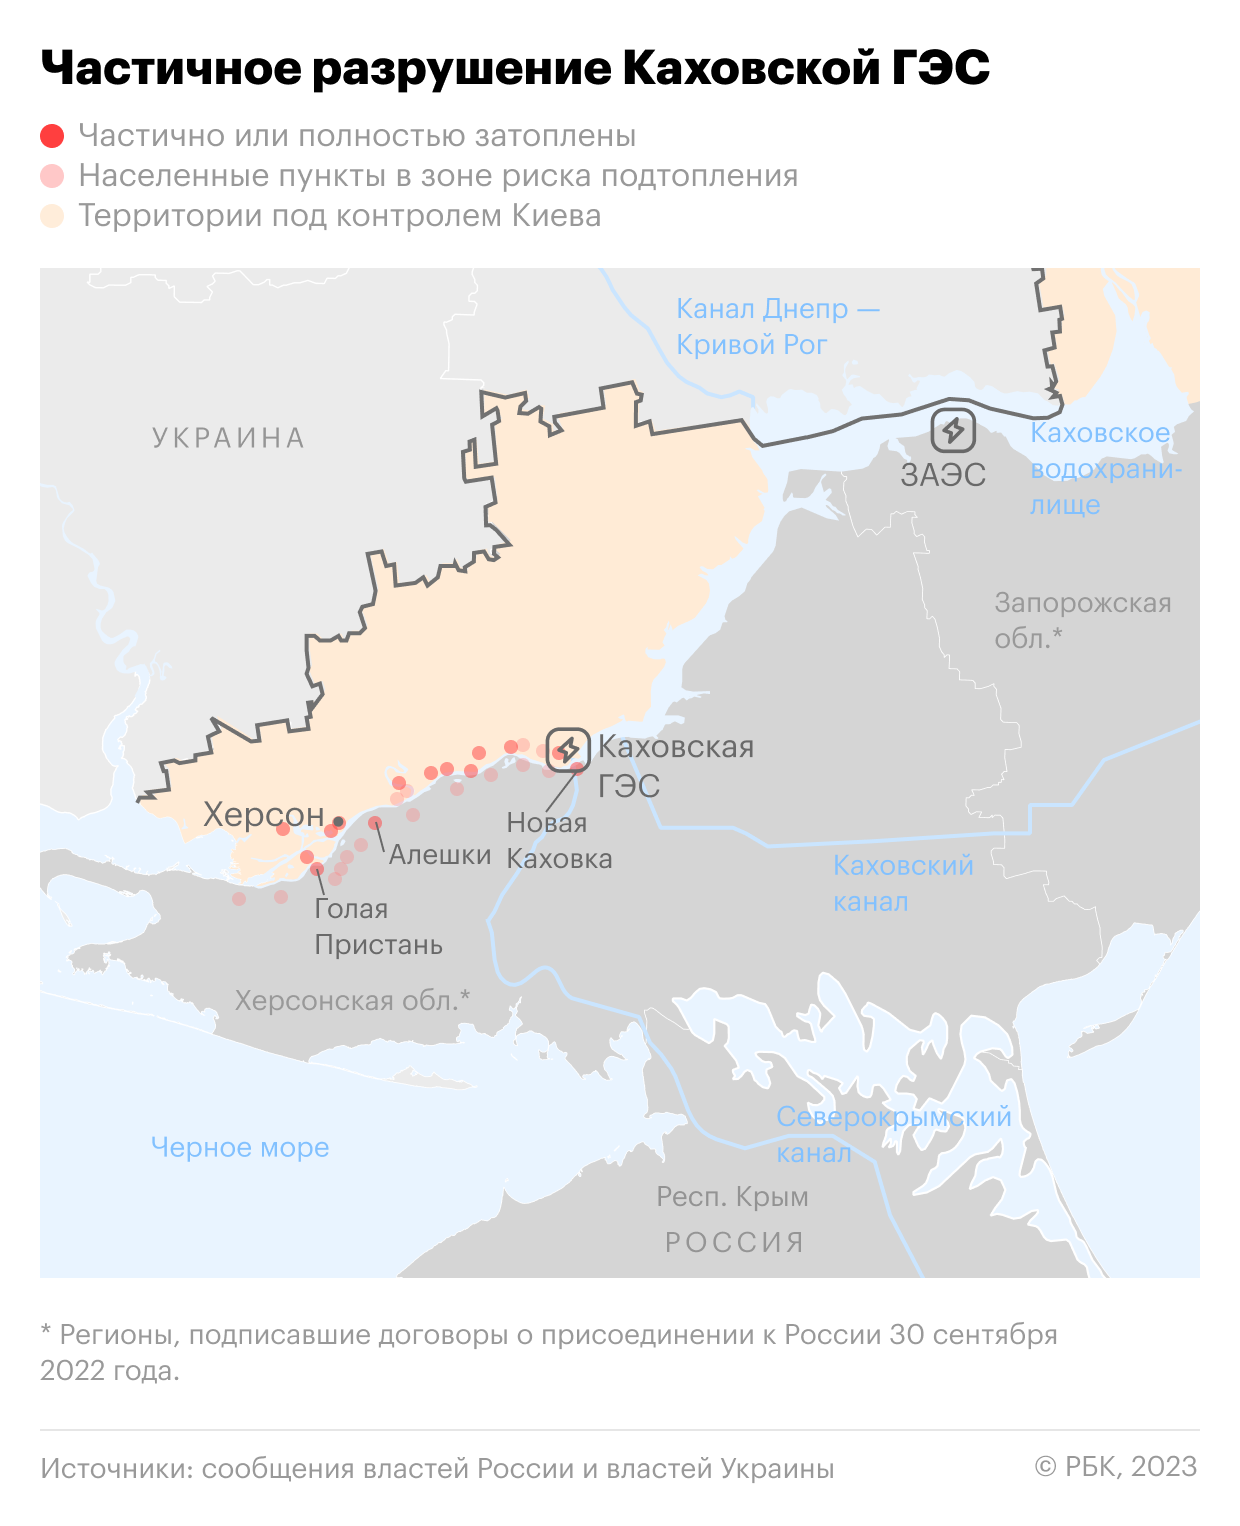 Журналисты сообщили о повреждениях на плотине Каховской ГЭС до разрушения"/>













